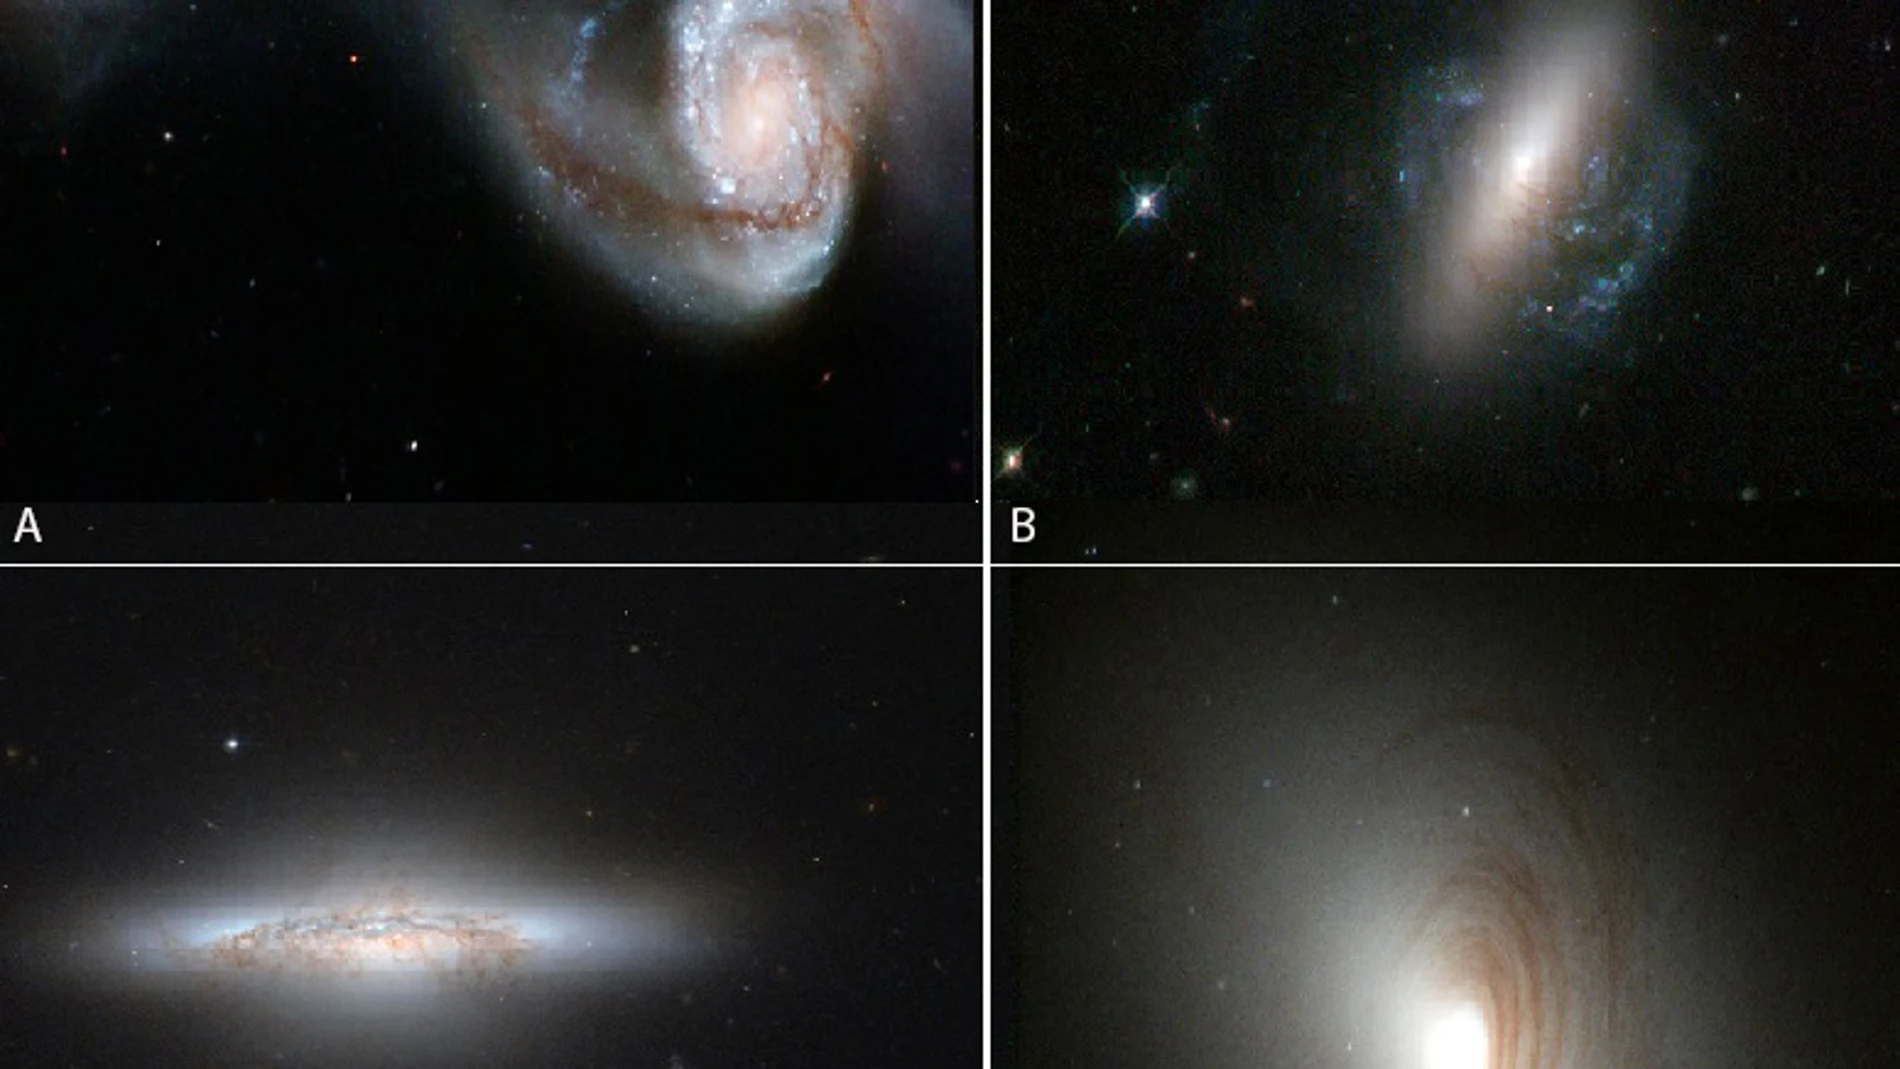 Imágenes de diferentes galaxias reales que pueden estar en estados de evolución análogos a los de la simulación.